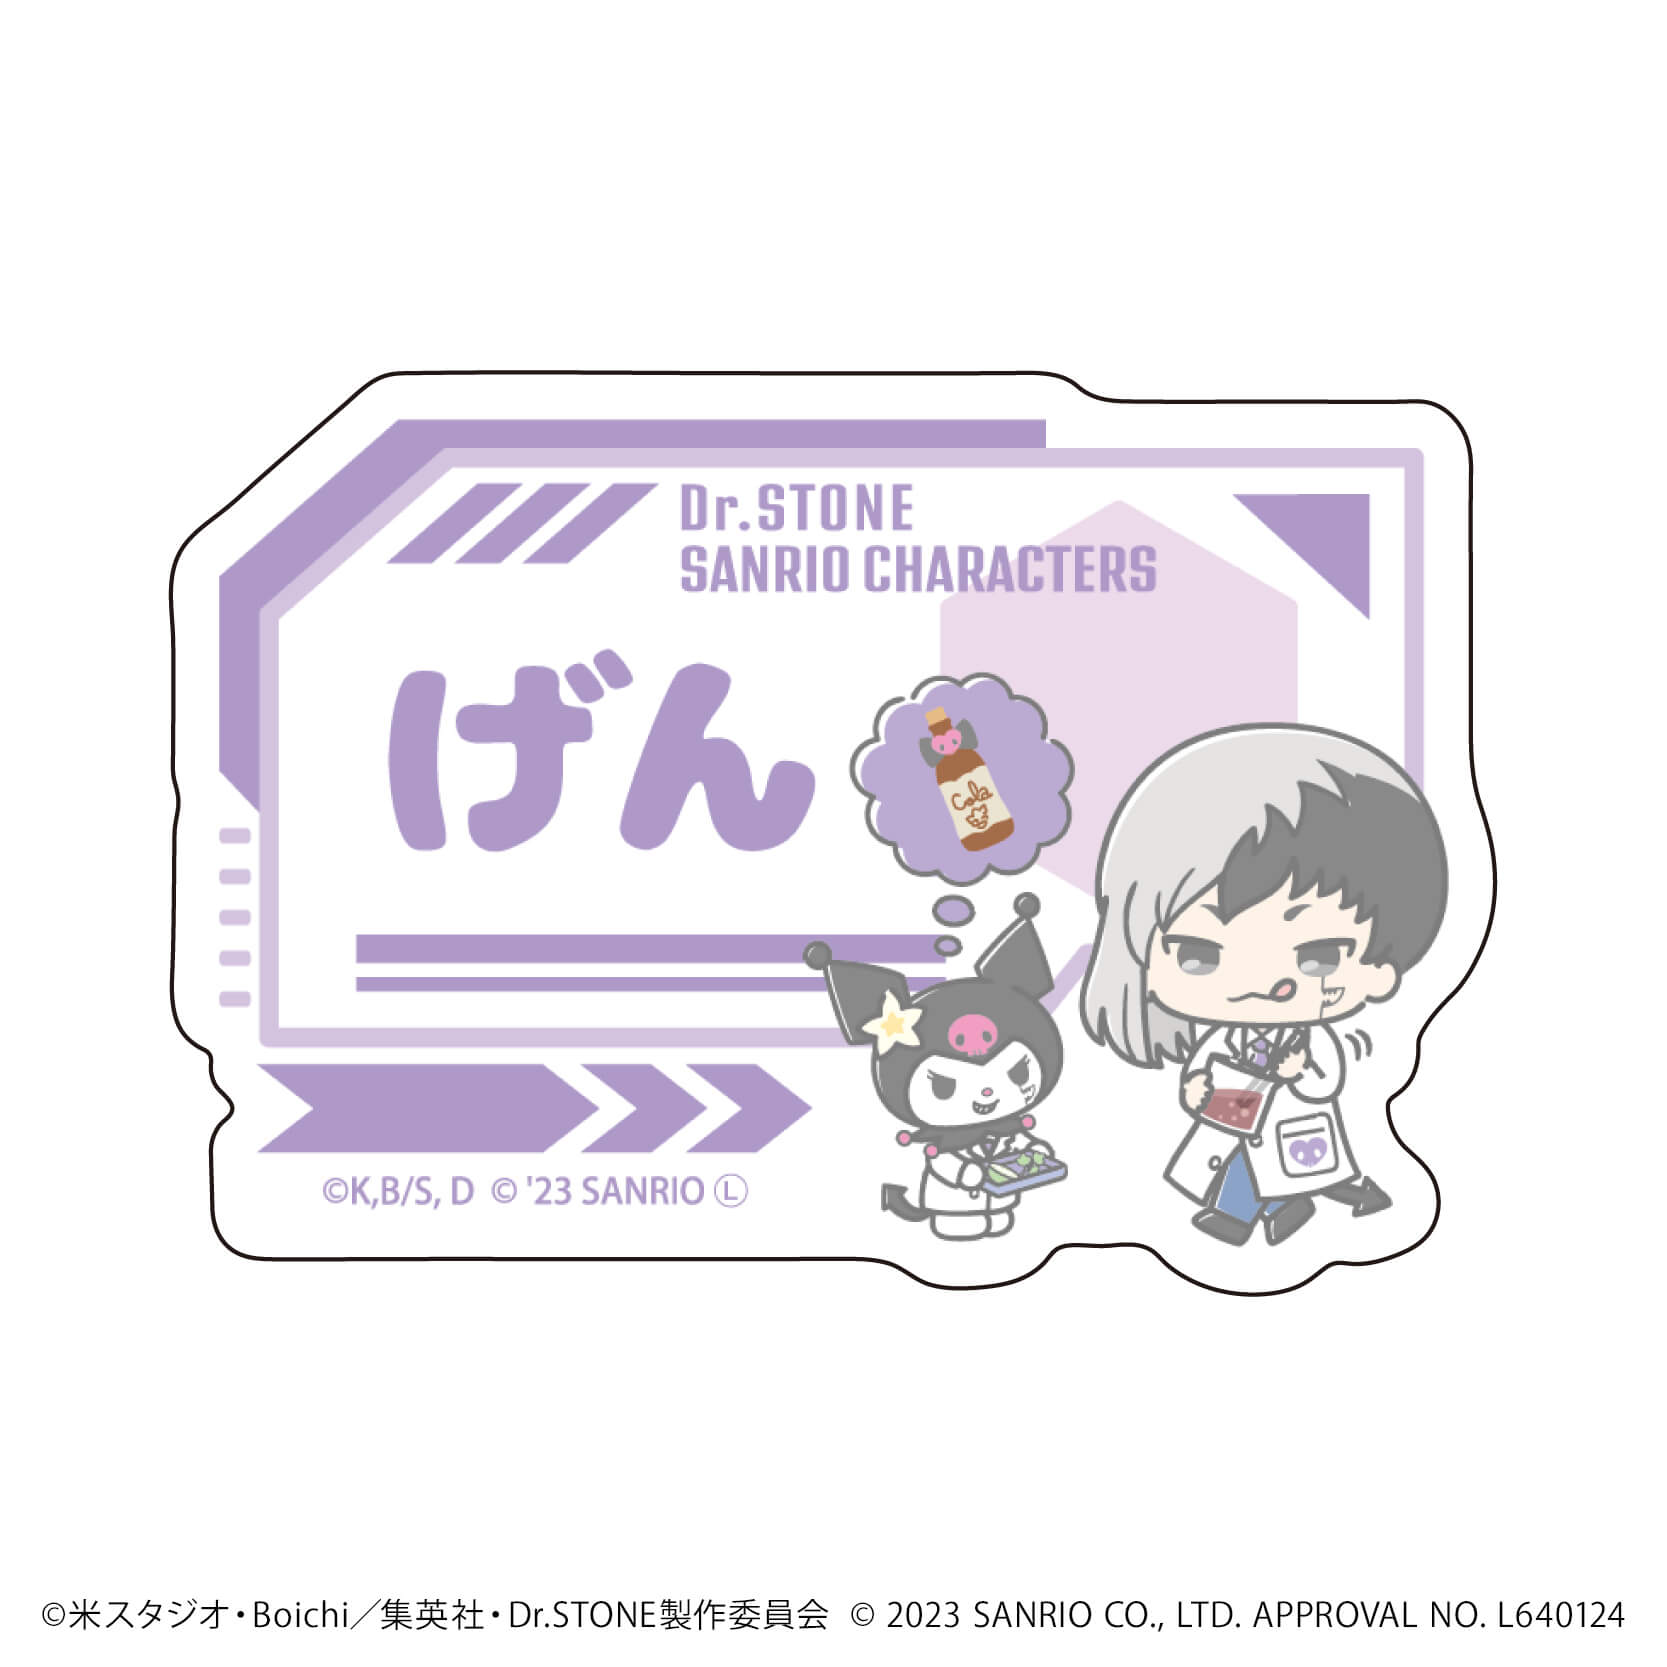 おなまえプレートバッジ「Dr.STONE×サンリオキャラクターズ」01/白衣　ブラインド(10種)(ミニキャライラスト)